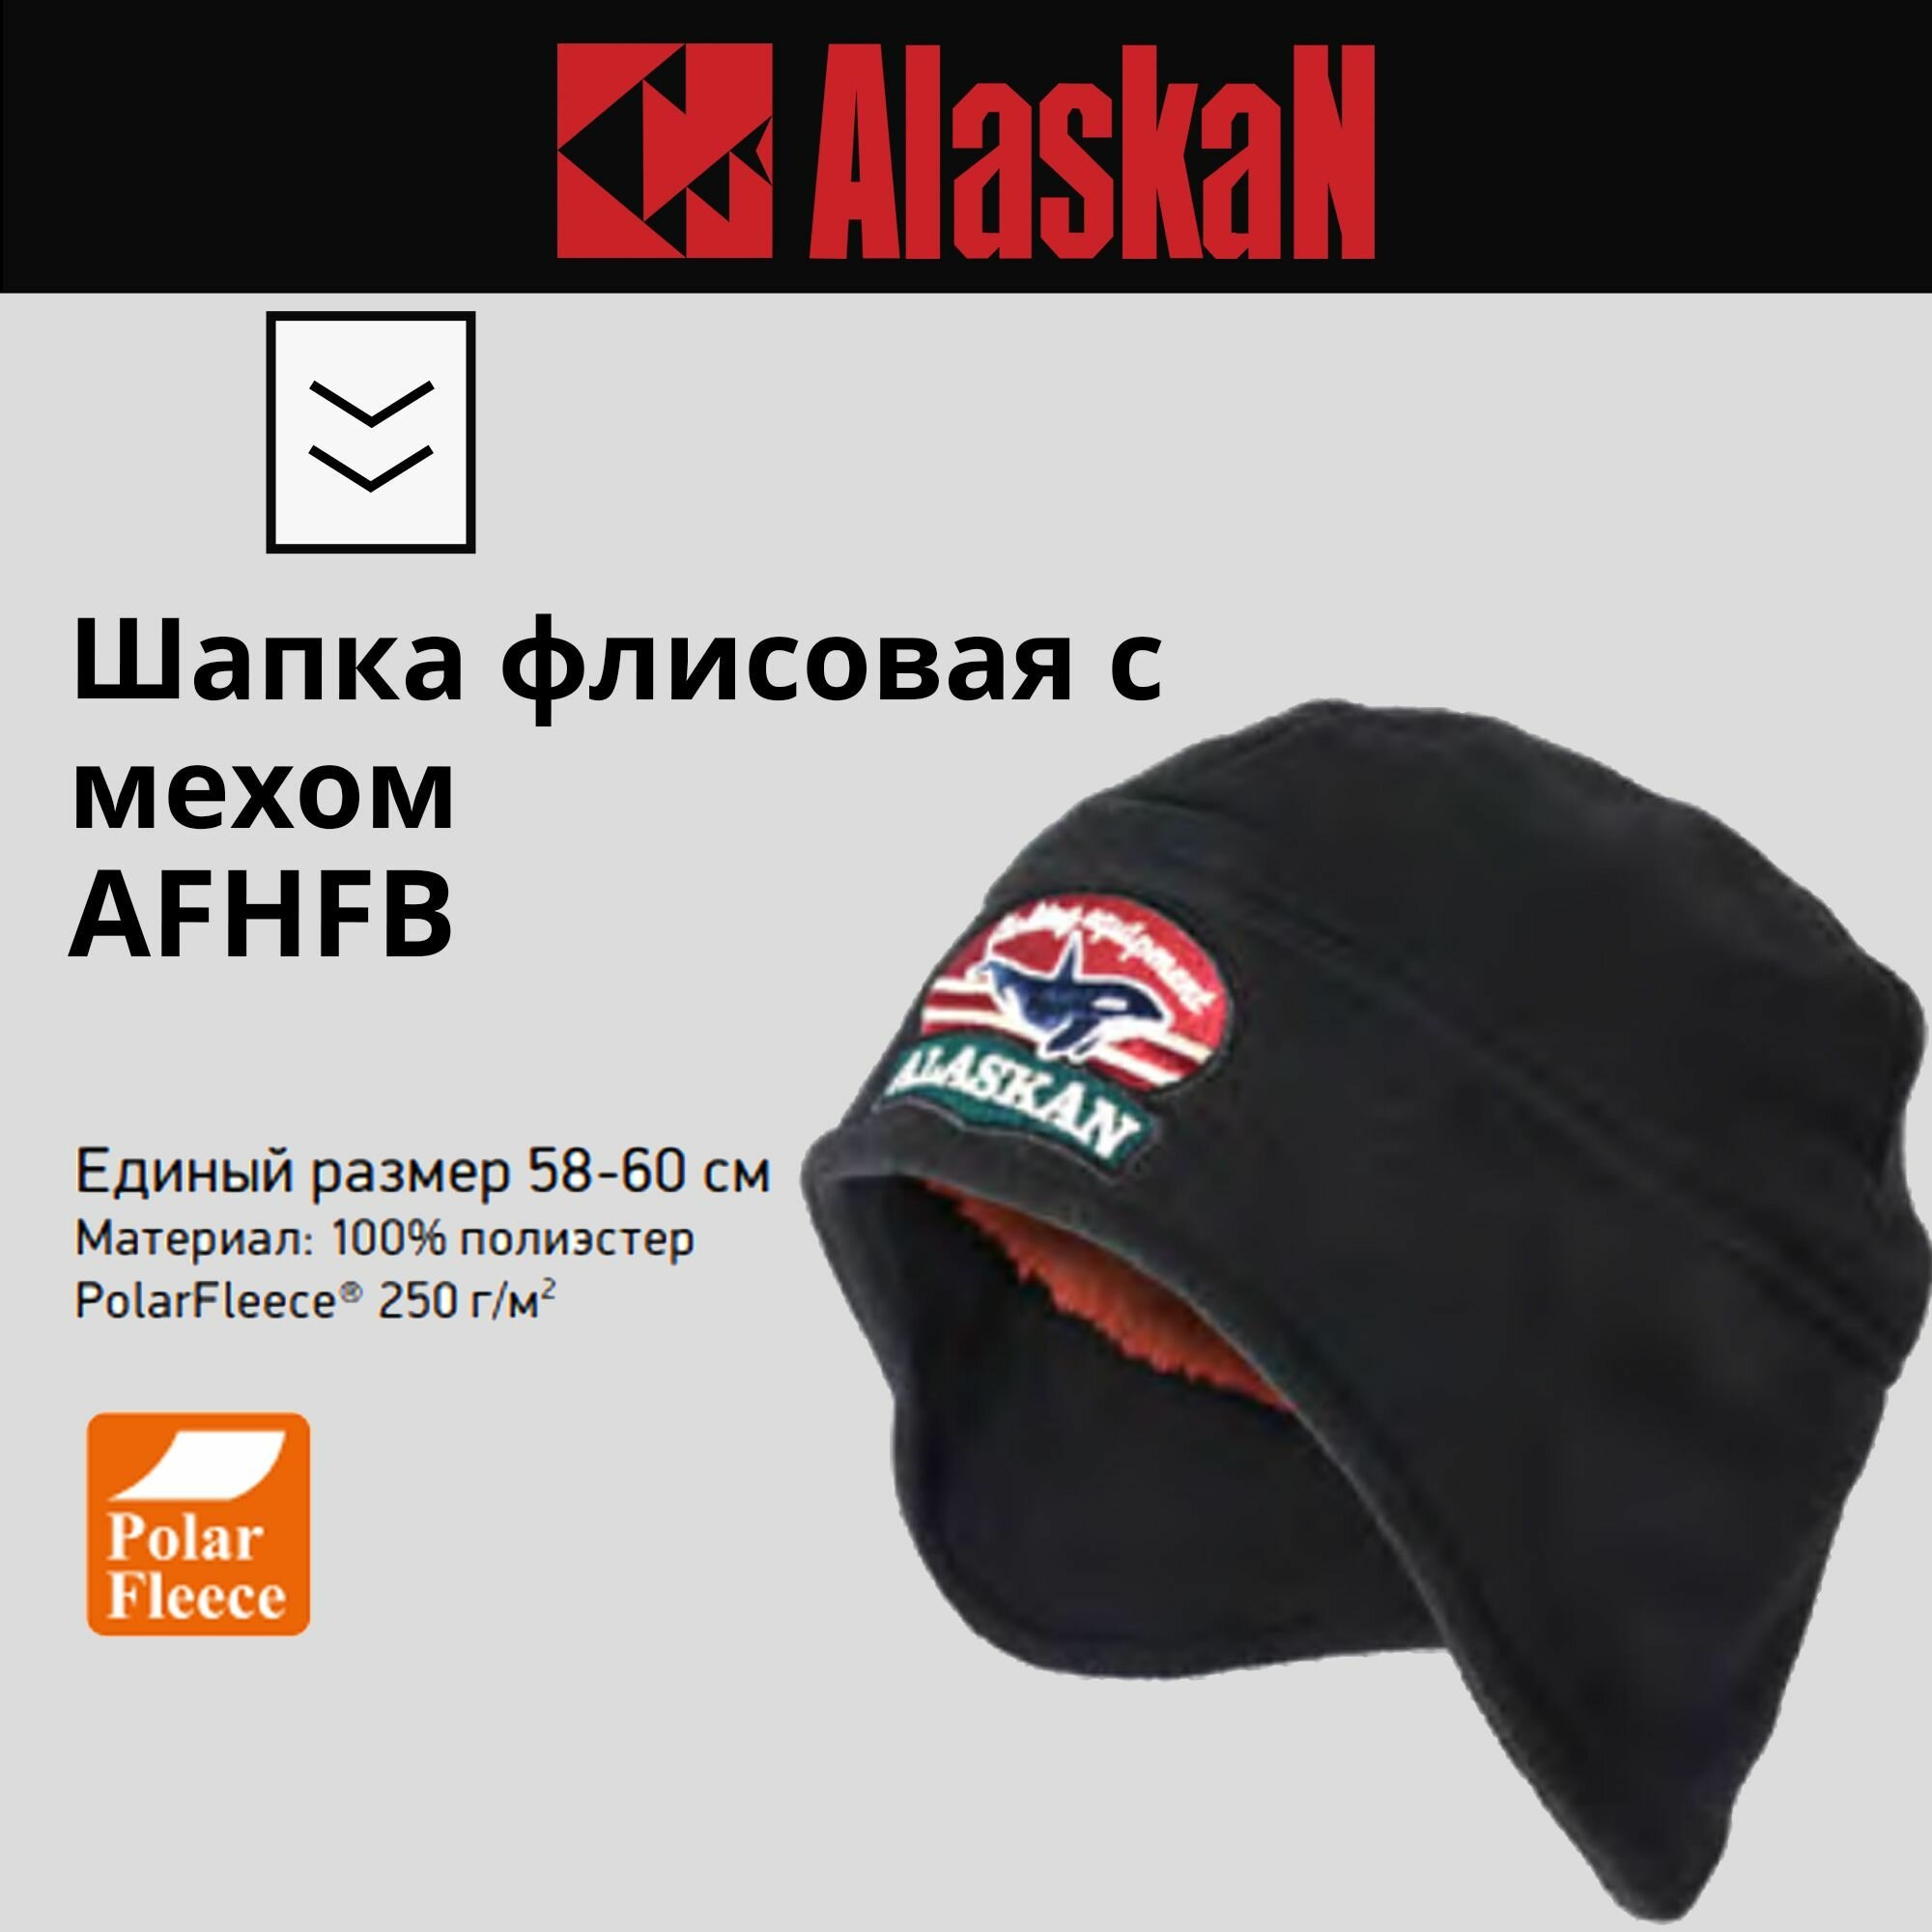 Шапка Alaskan флисовая с мехом черная (AFHFB) AFHFB